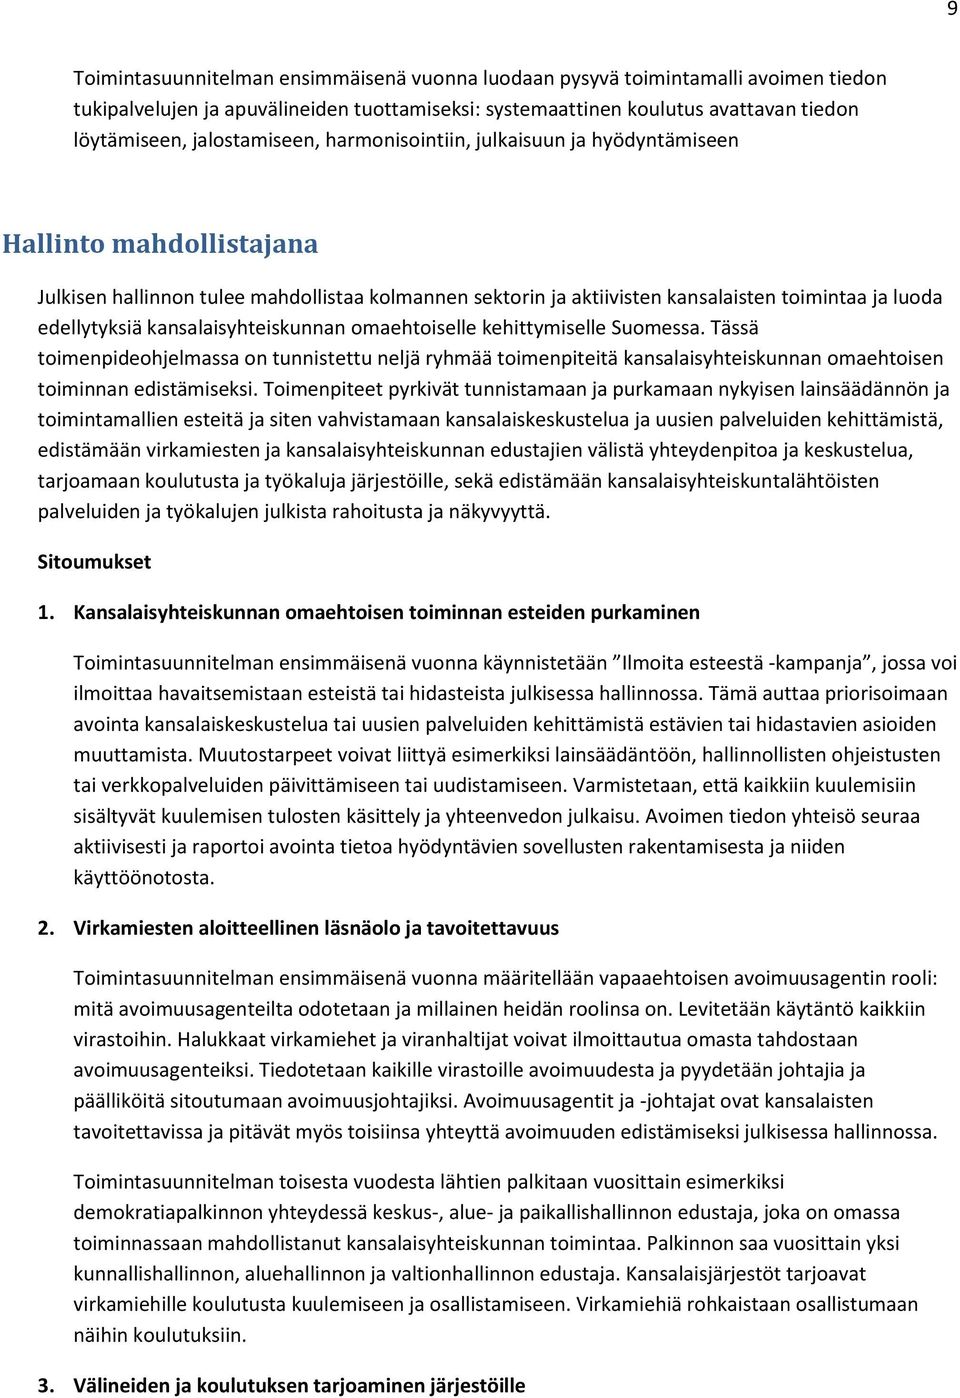 edellytyksiä kansalaisyhteiskunnan omaehtoiselle kehittymiselle Suomessa.